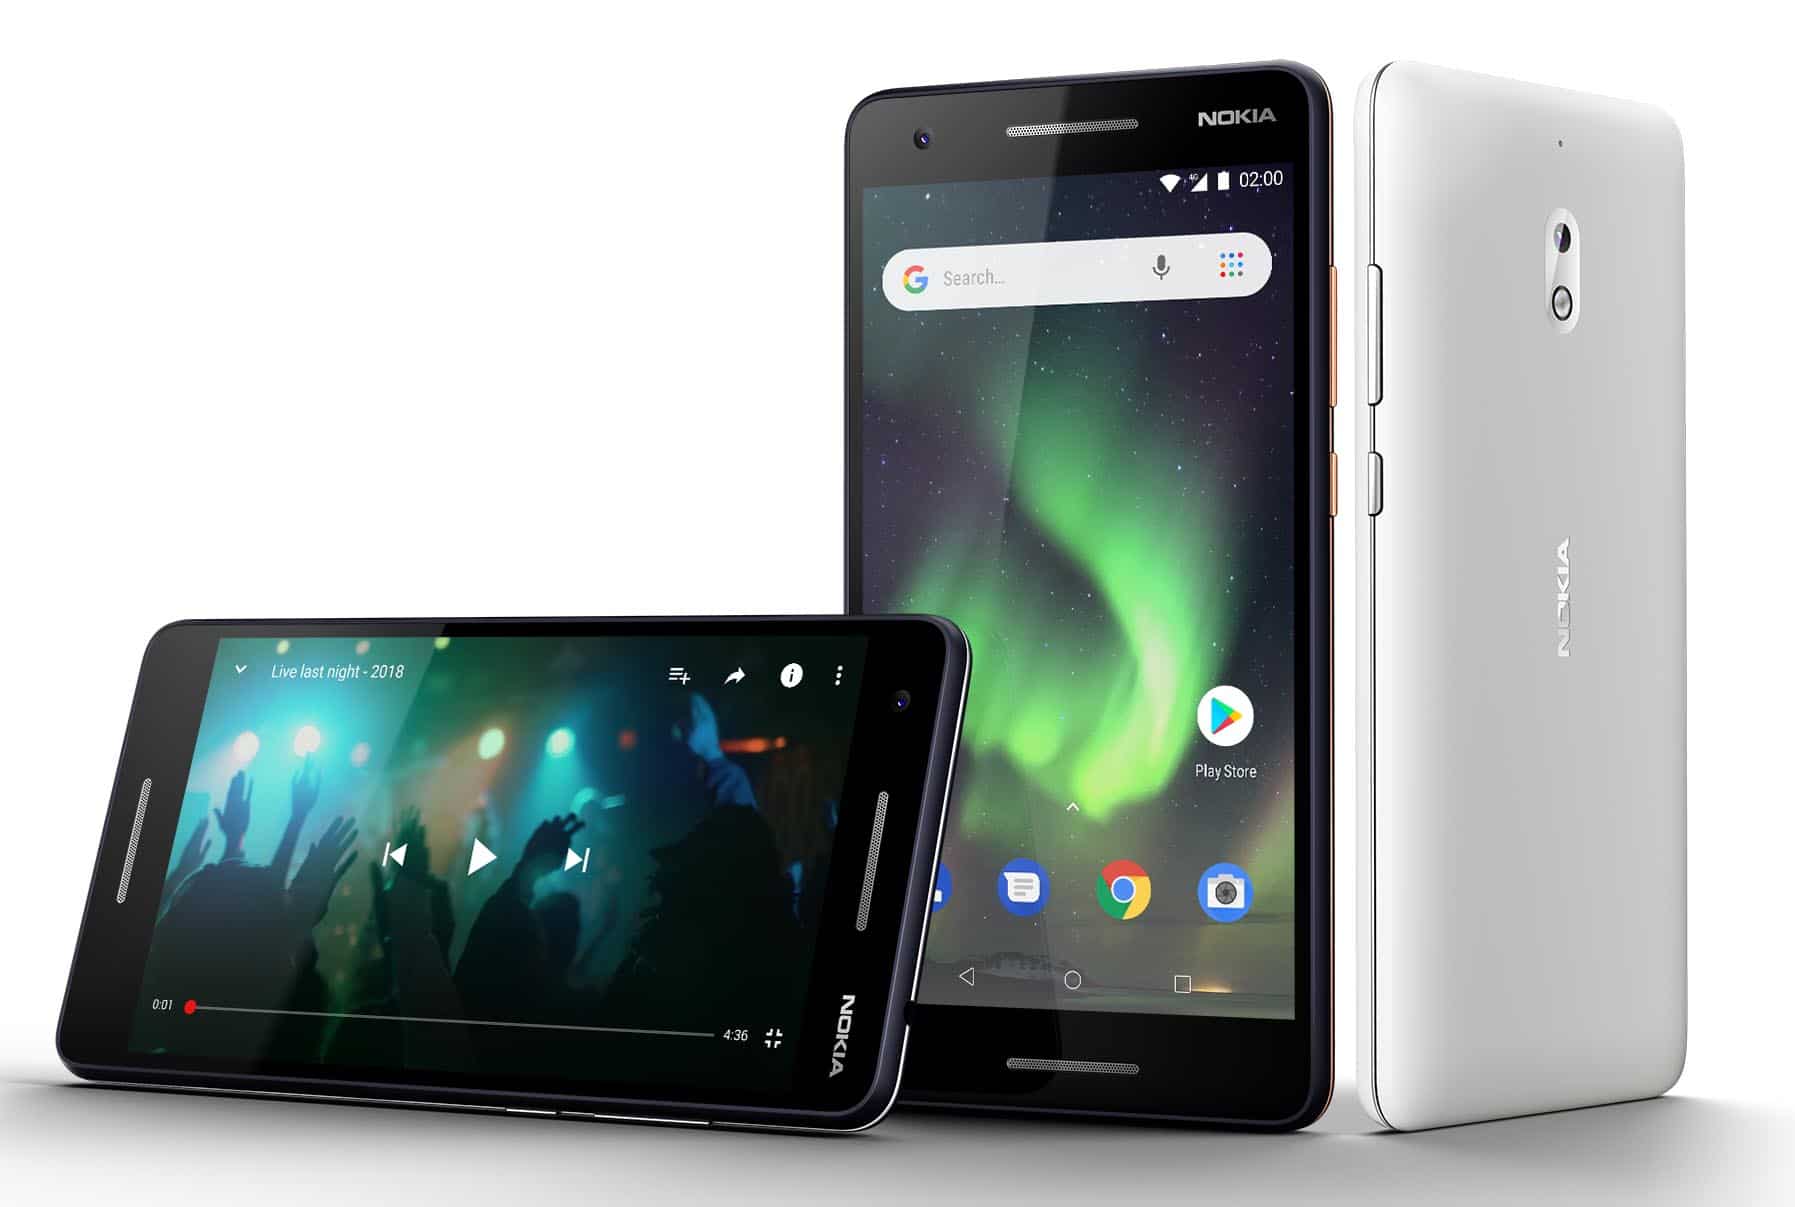 Nokia 2.1 chính thức được cập nhật lên Android 10 (Phiên bản Go) – Nâng cao khả năng trải nghiệm cho người dùng